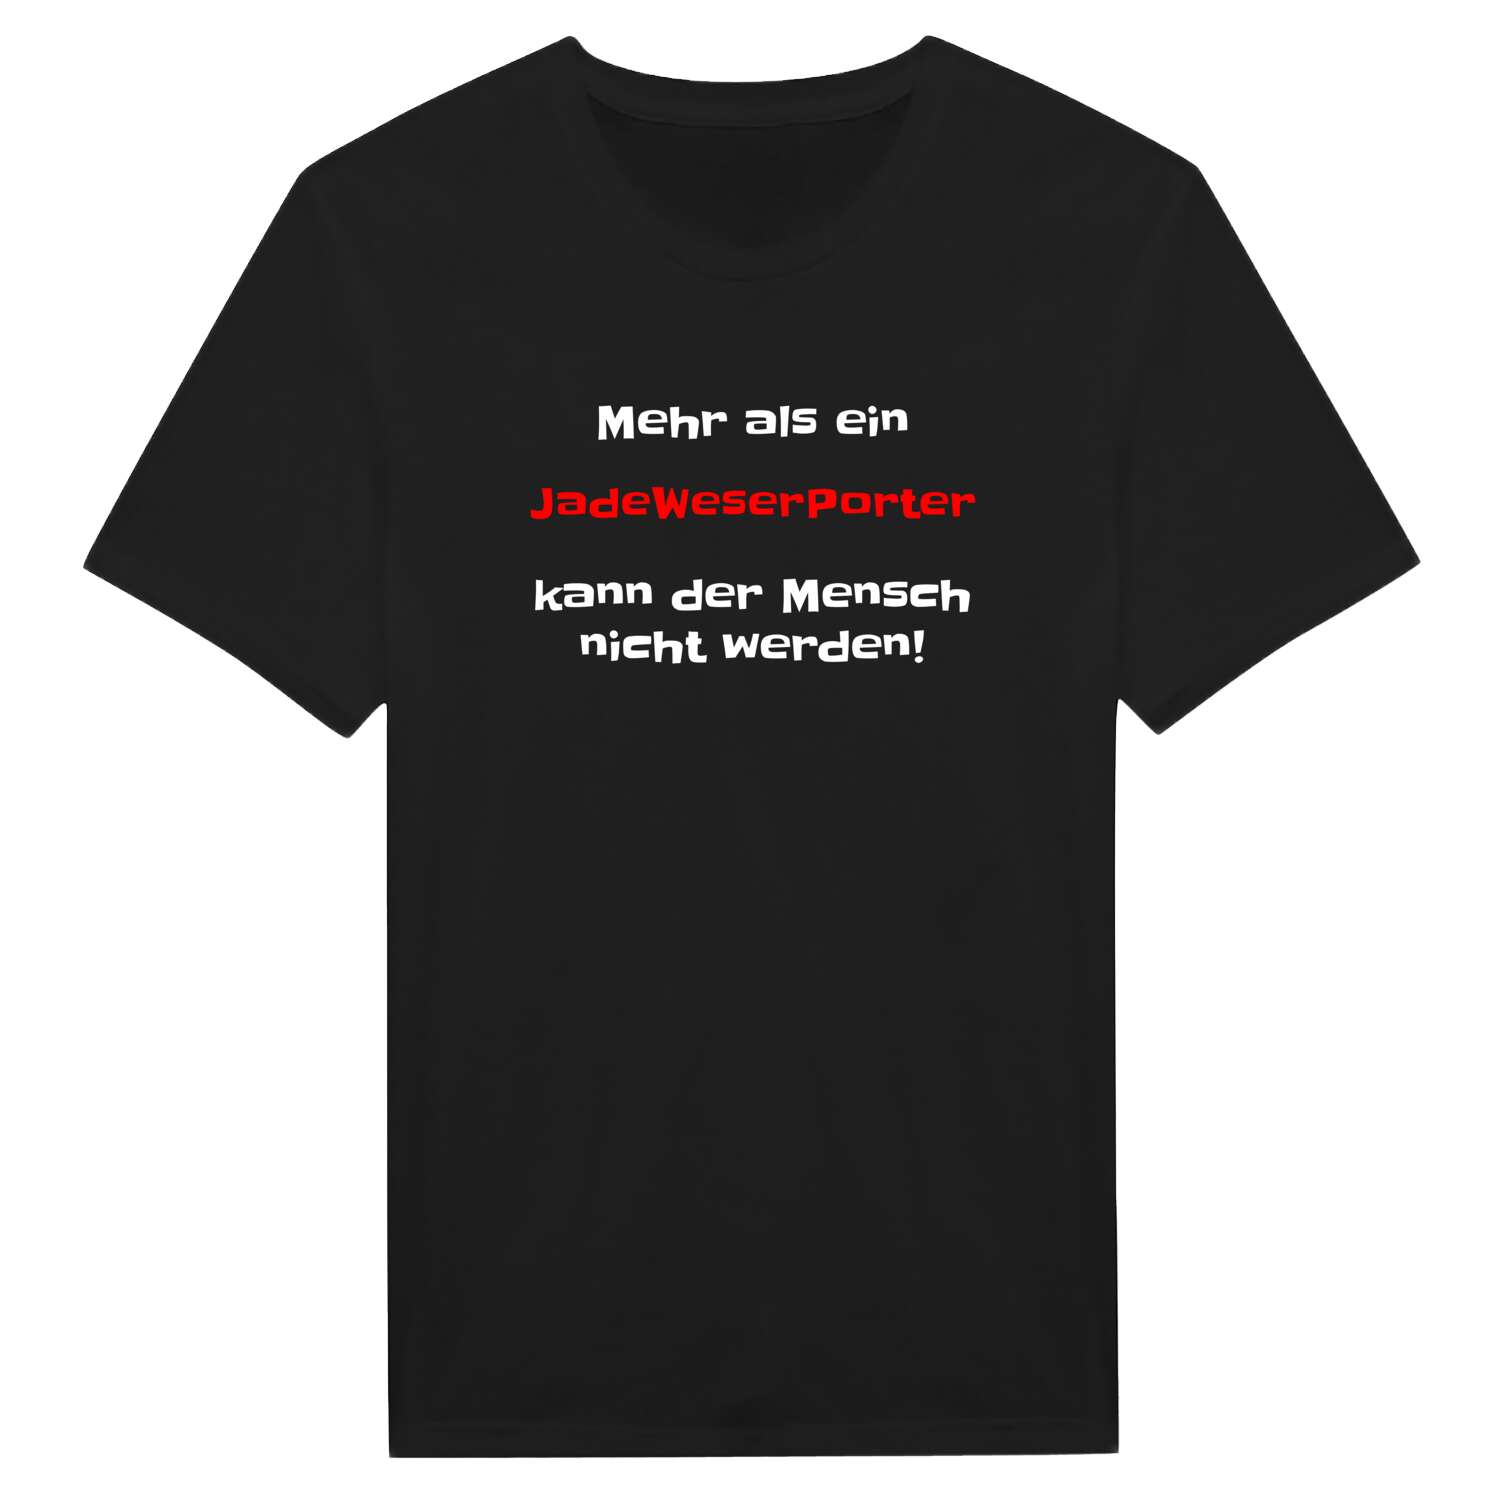 JadeWeserPort T-Shirt »Mehr als ein«